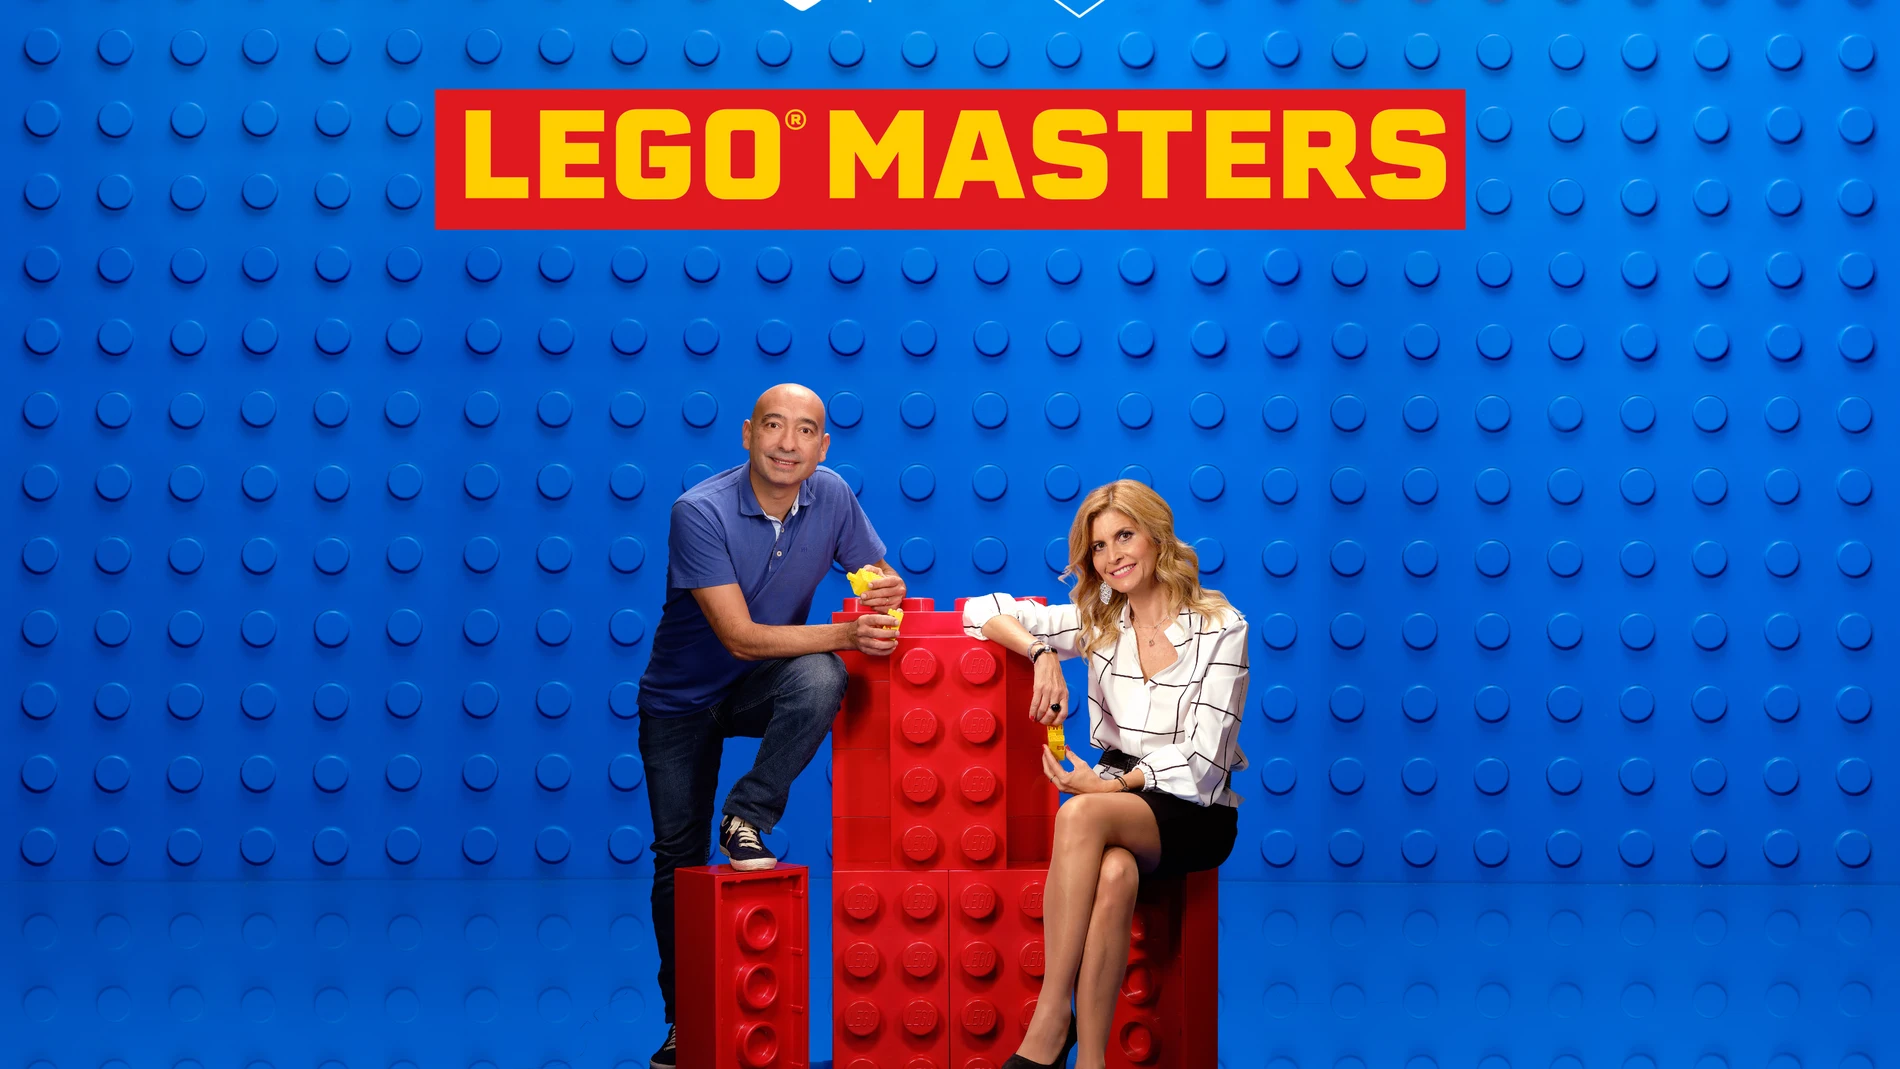 Begoña y Pedro, una pareja de amigos que siente una gran pasión por LEGO  